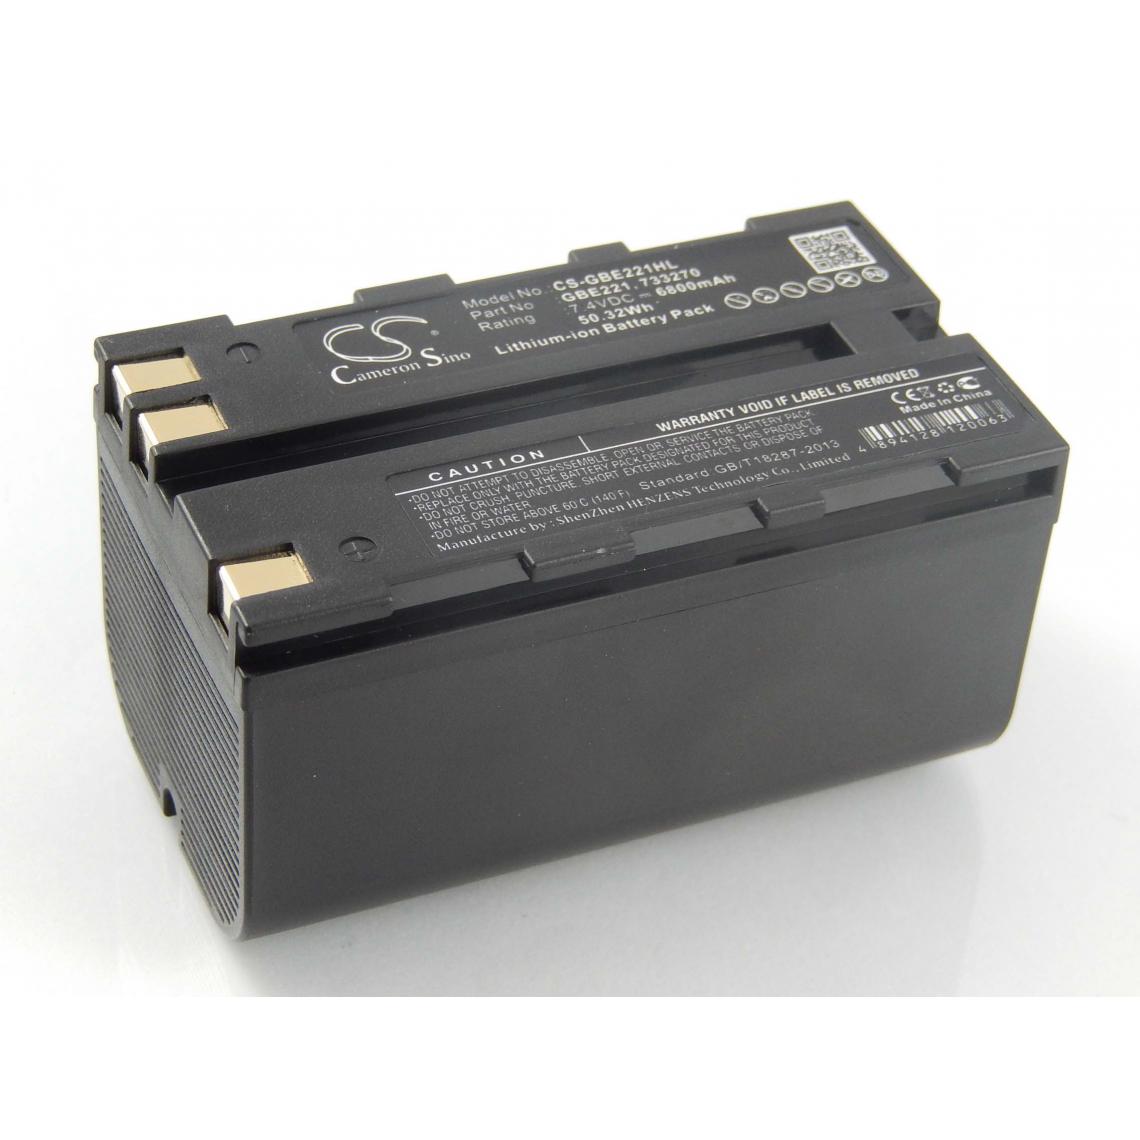 Vhbw - vhbw Batterie compatible avec Leica Builder 100, 200, 300, 400 dispositif de mesure laser, outil de mesure (6800mAh, 7,4V, Li-ion) - Piles rechargeables